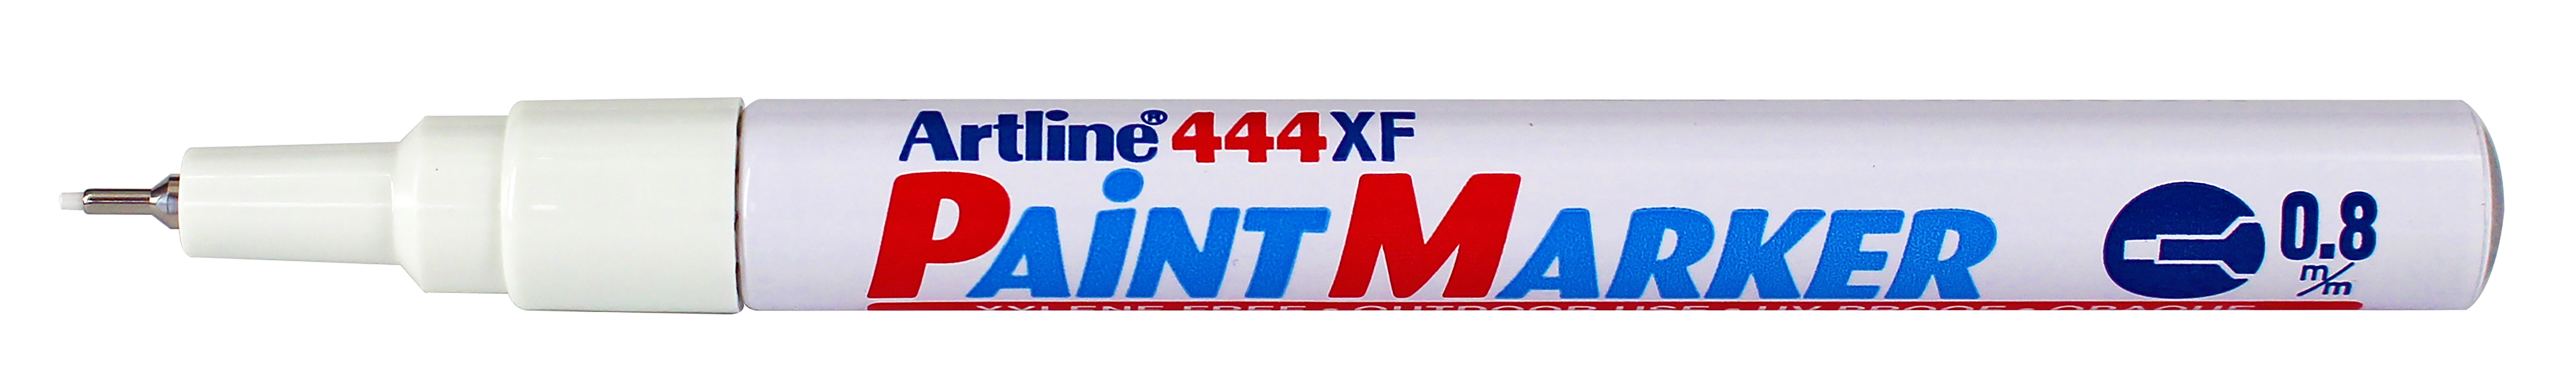 Artline Merkepenn 444XF Paint hvit